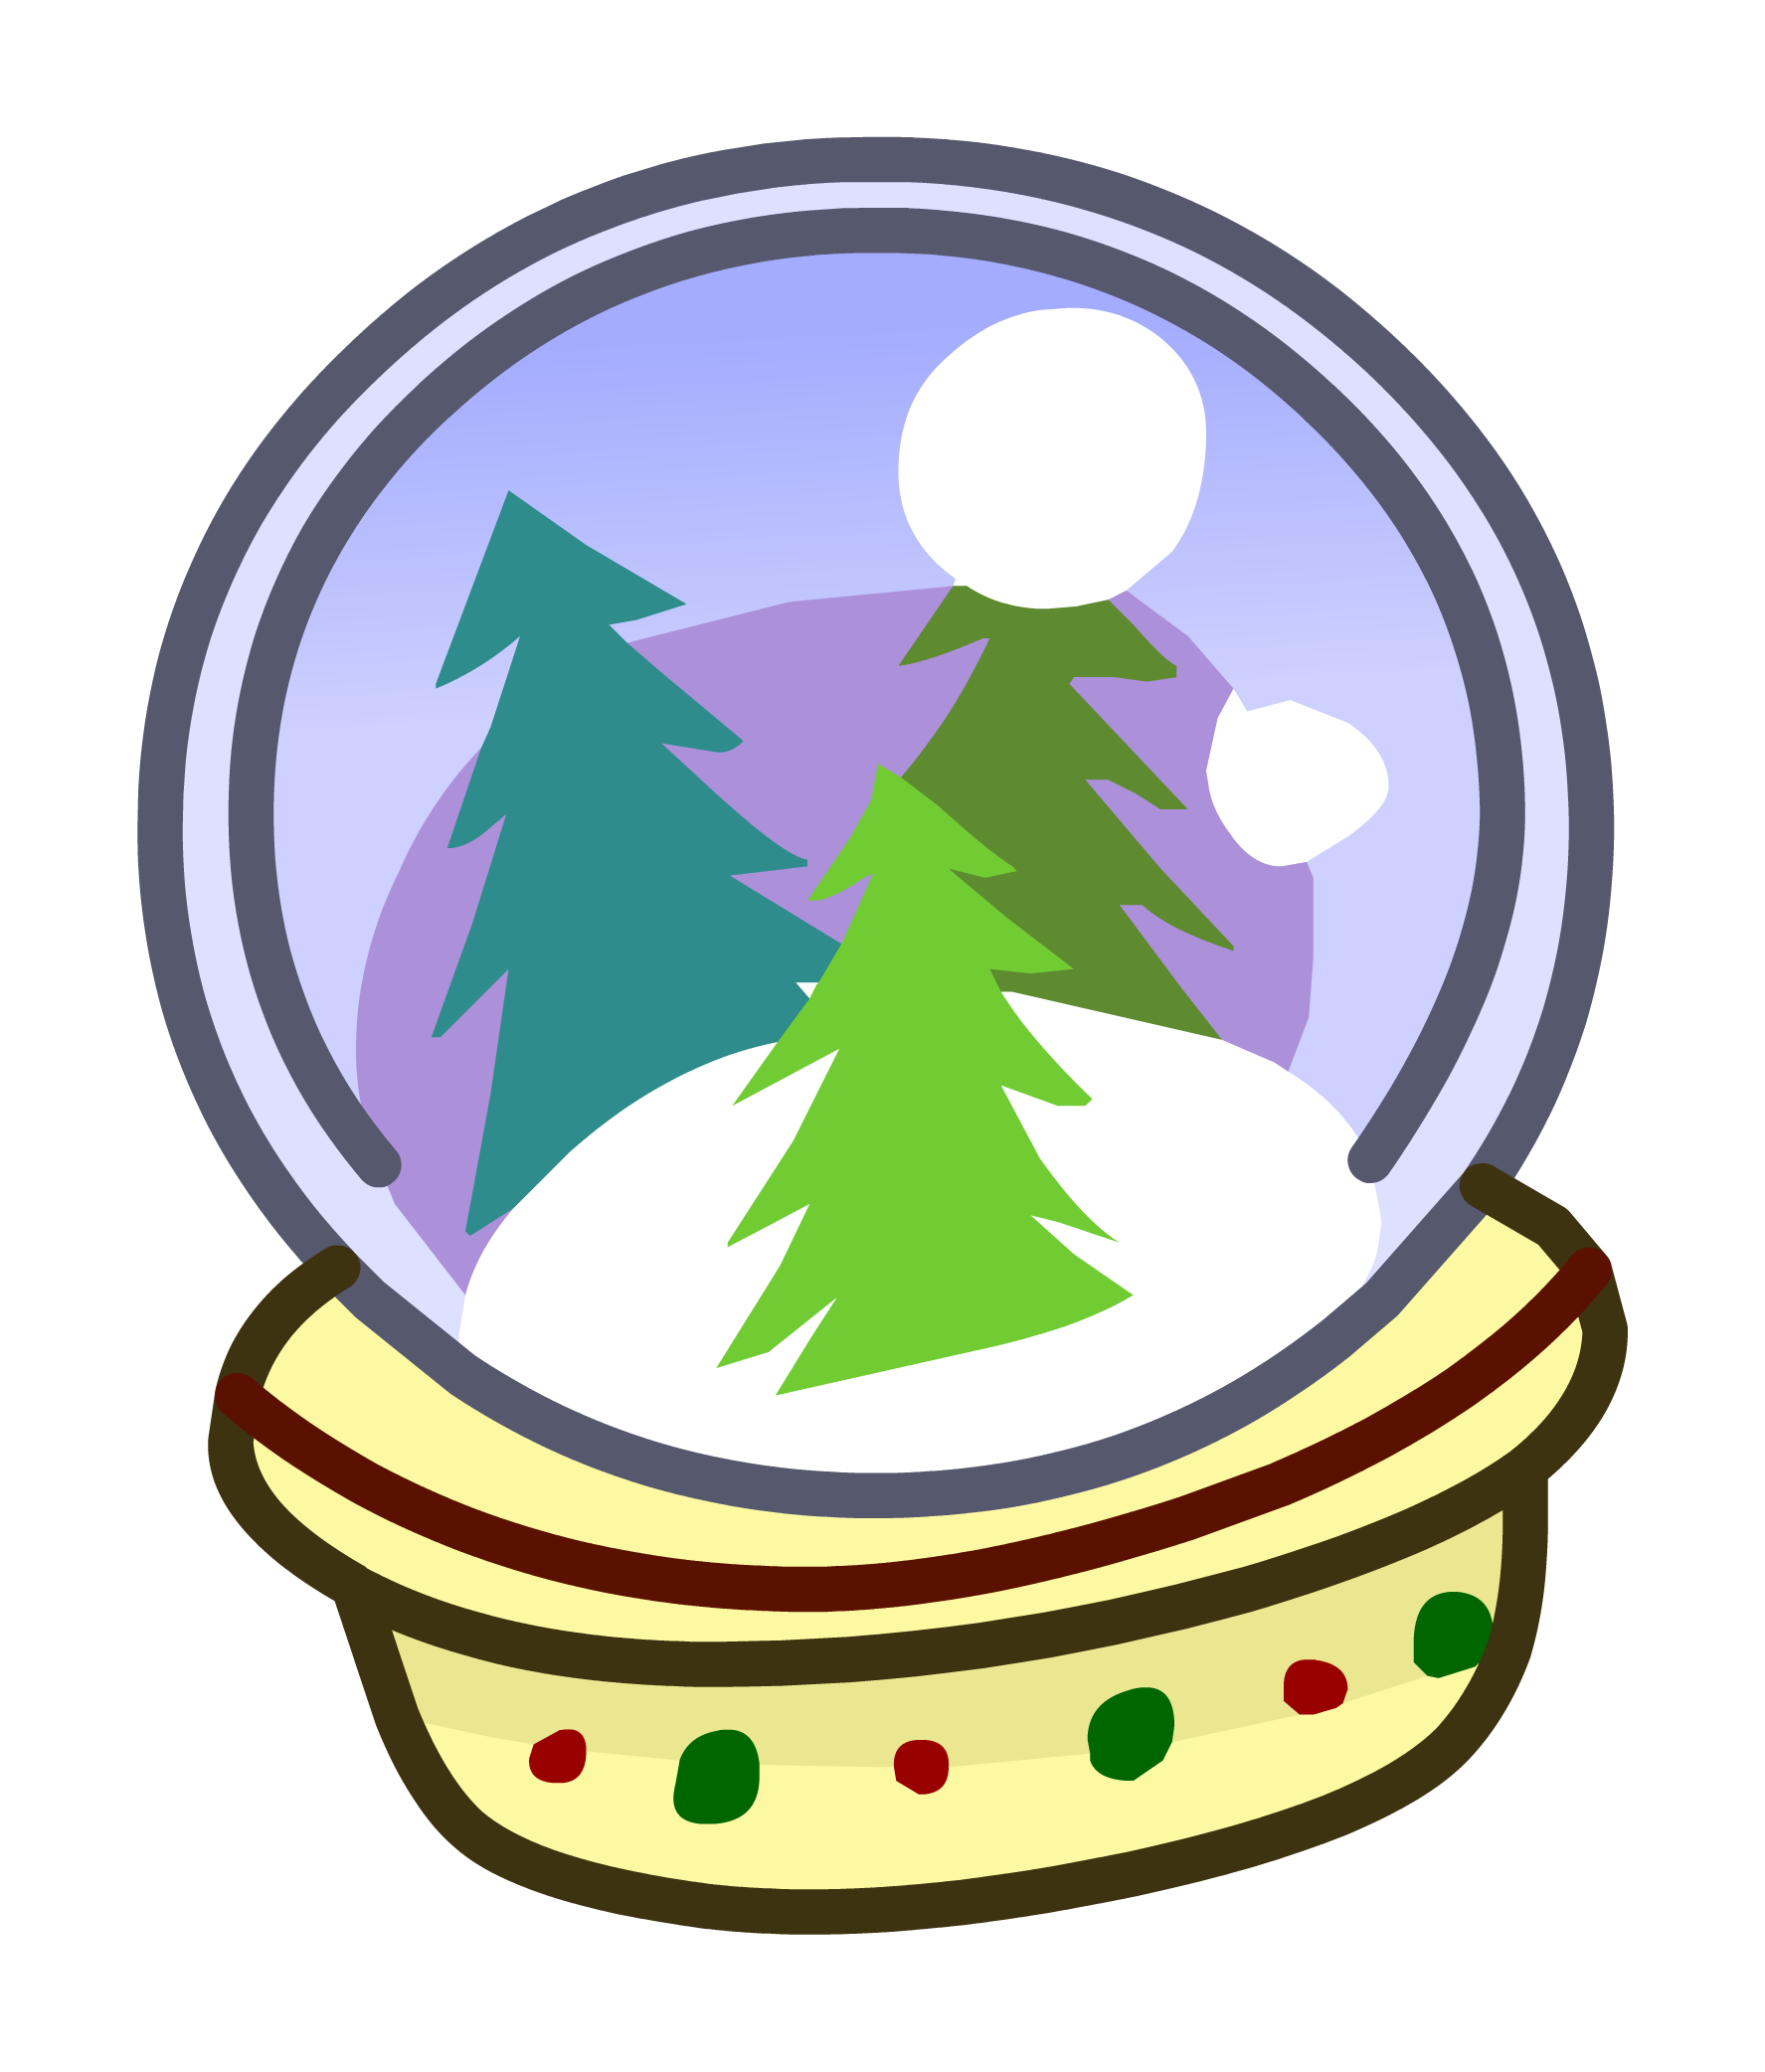 Snow Globe Pin - Christmas Tree (1775x2084)